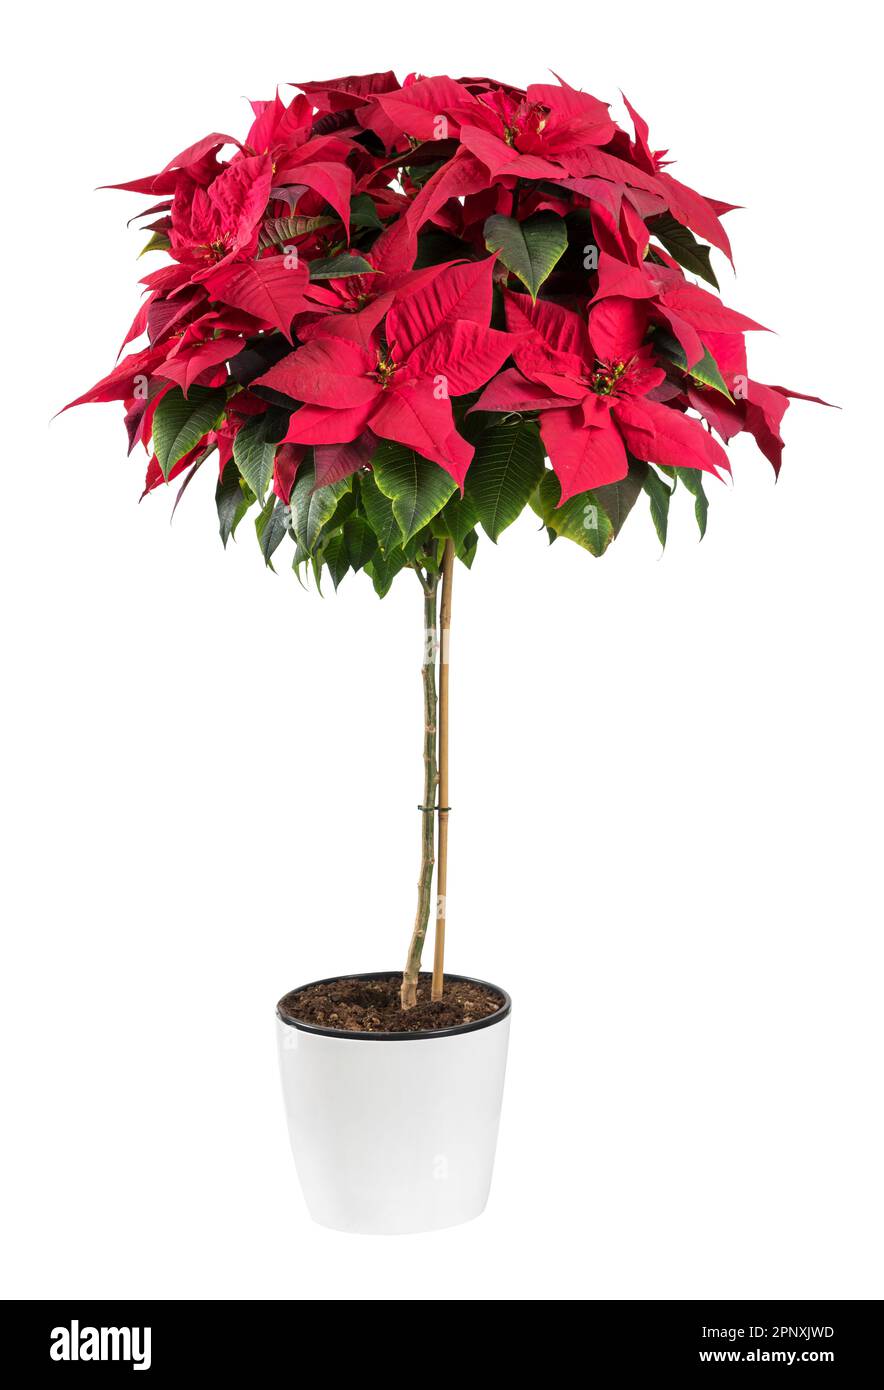 Frische rote Poinsettia-Pflanze mit grünen Blättern, die in Keramiktopf wachsen, isoliert auf weißem Hintergrund Stockfoto